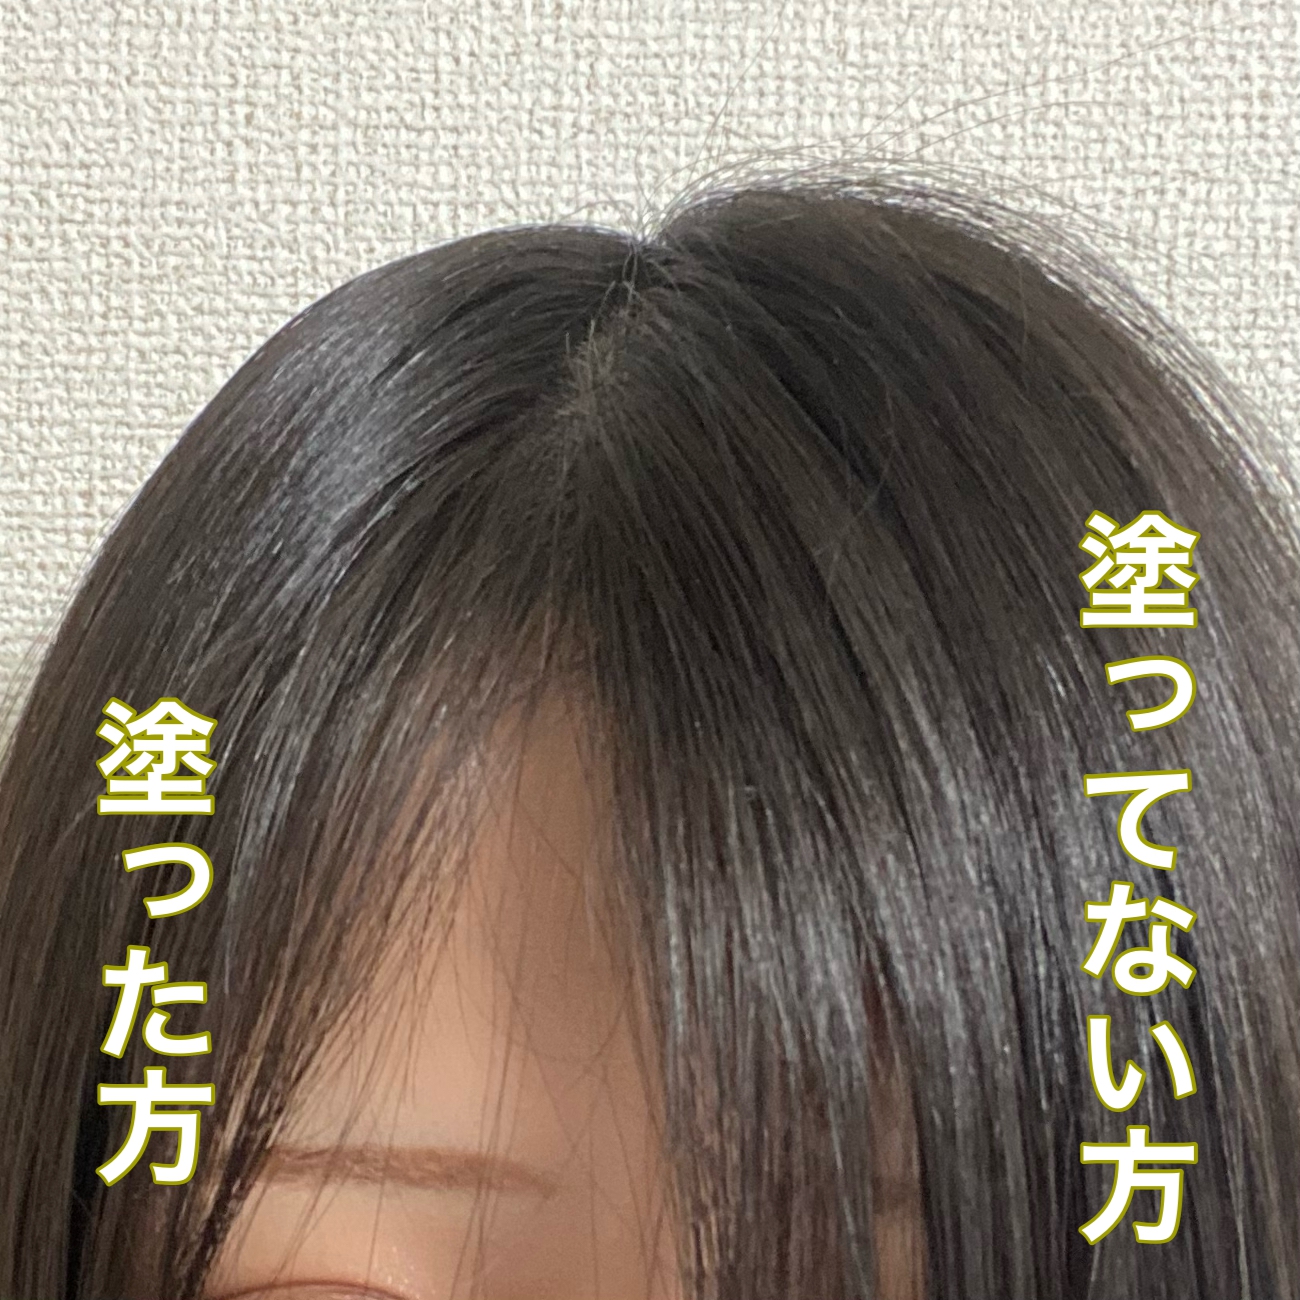 matomage(マトメージュ) まとめ髪スティック スーパーホールドの良い点・メリットに関するyuri.kさんの口コミ画像1